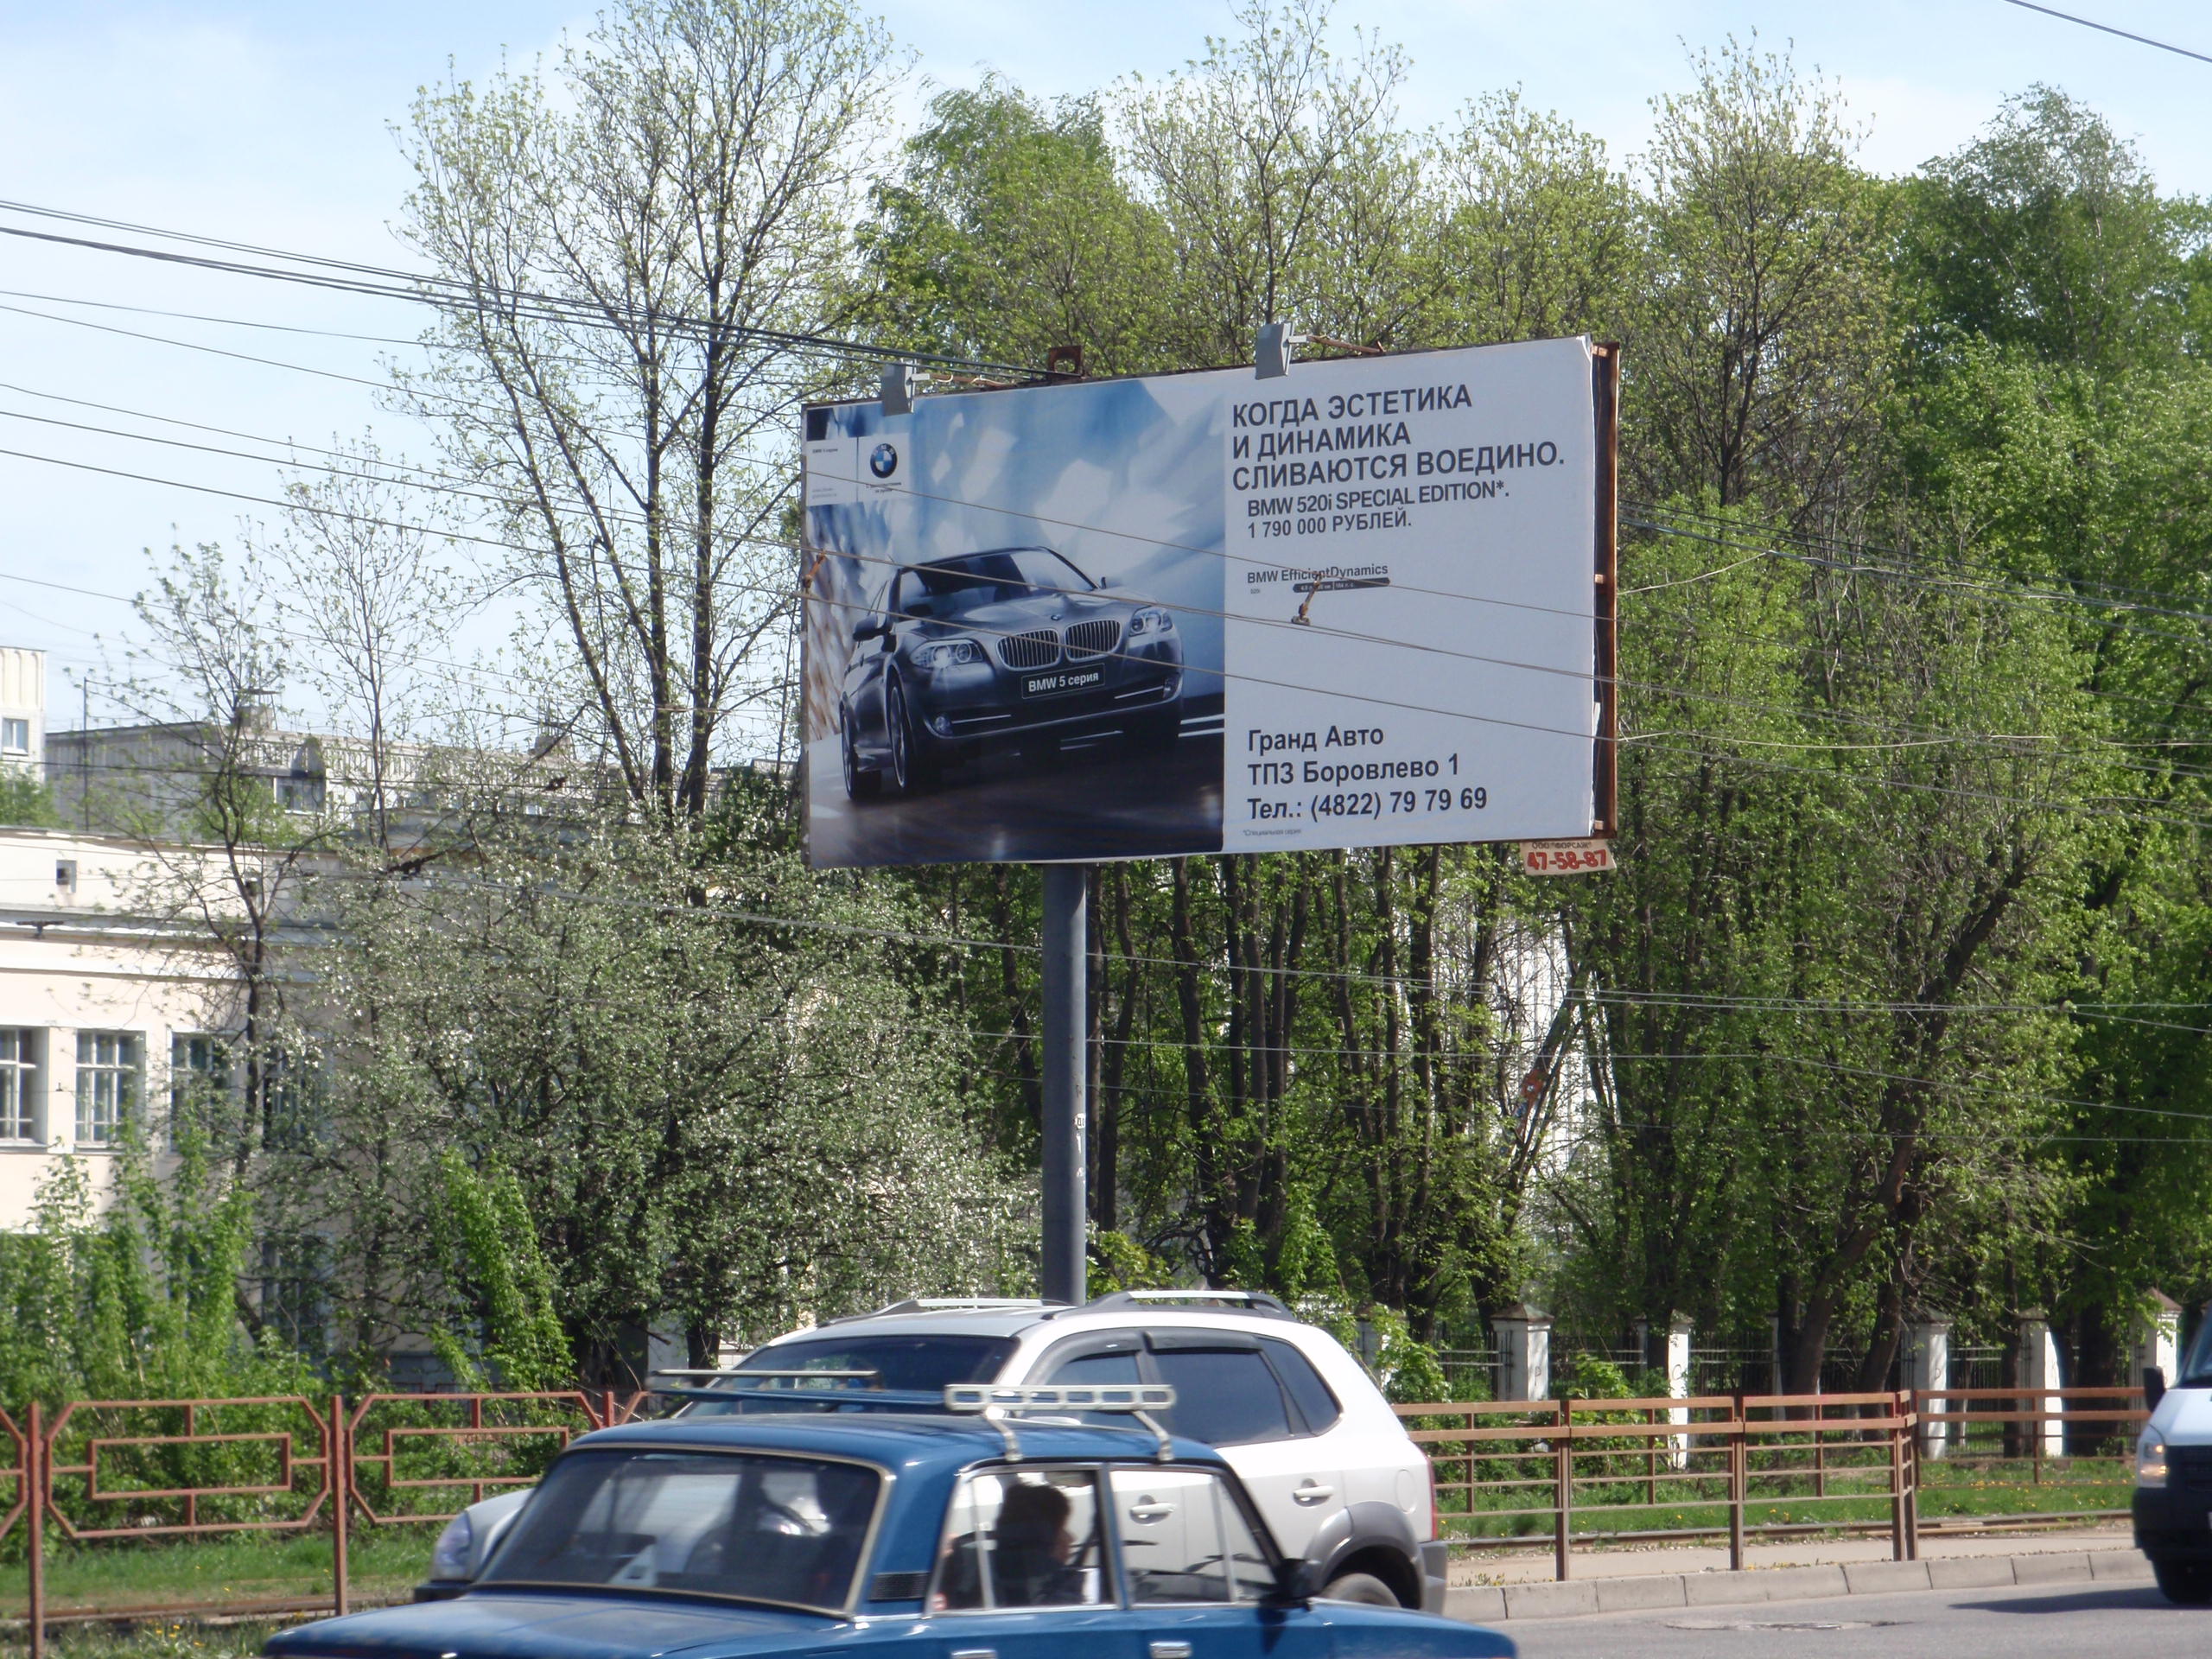 Санкт Петербургское шоссе (напротив ДК «Металлист» около кольца трамвая), сторона Б